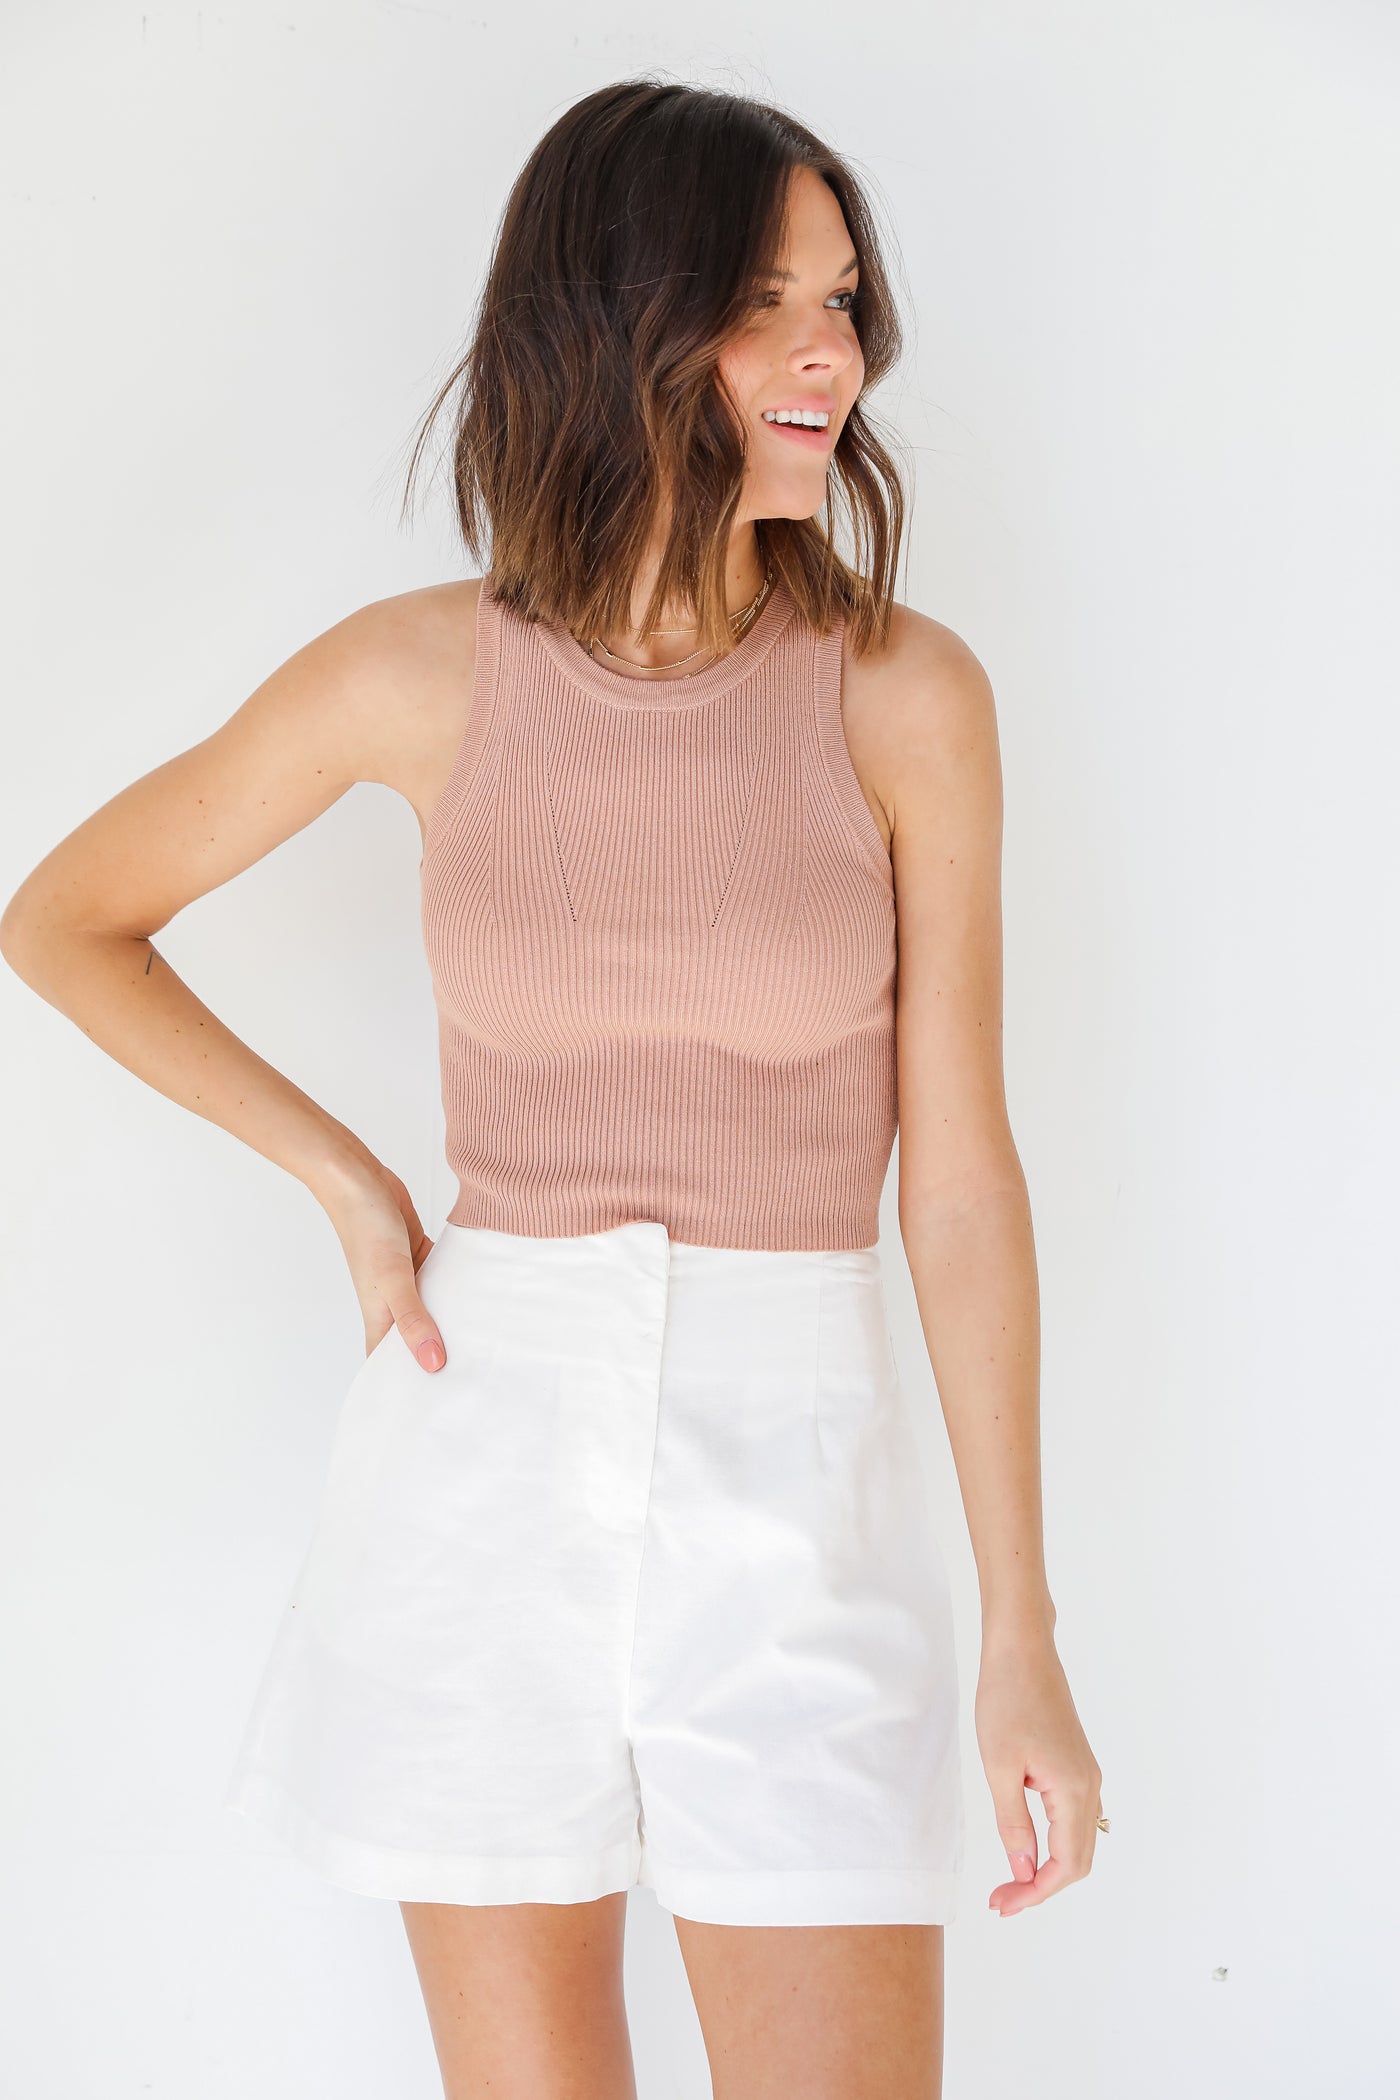 Linen Shorts in white on model